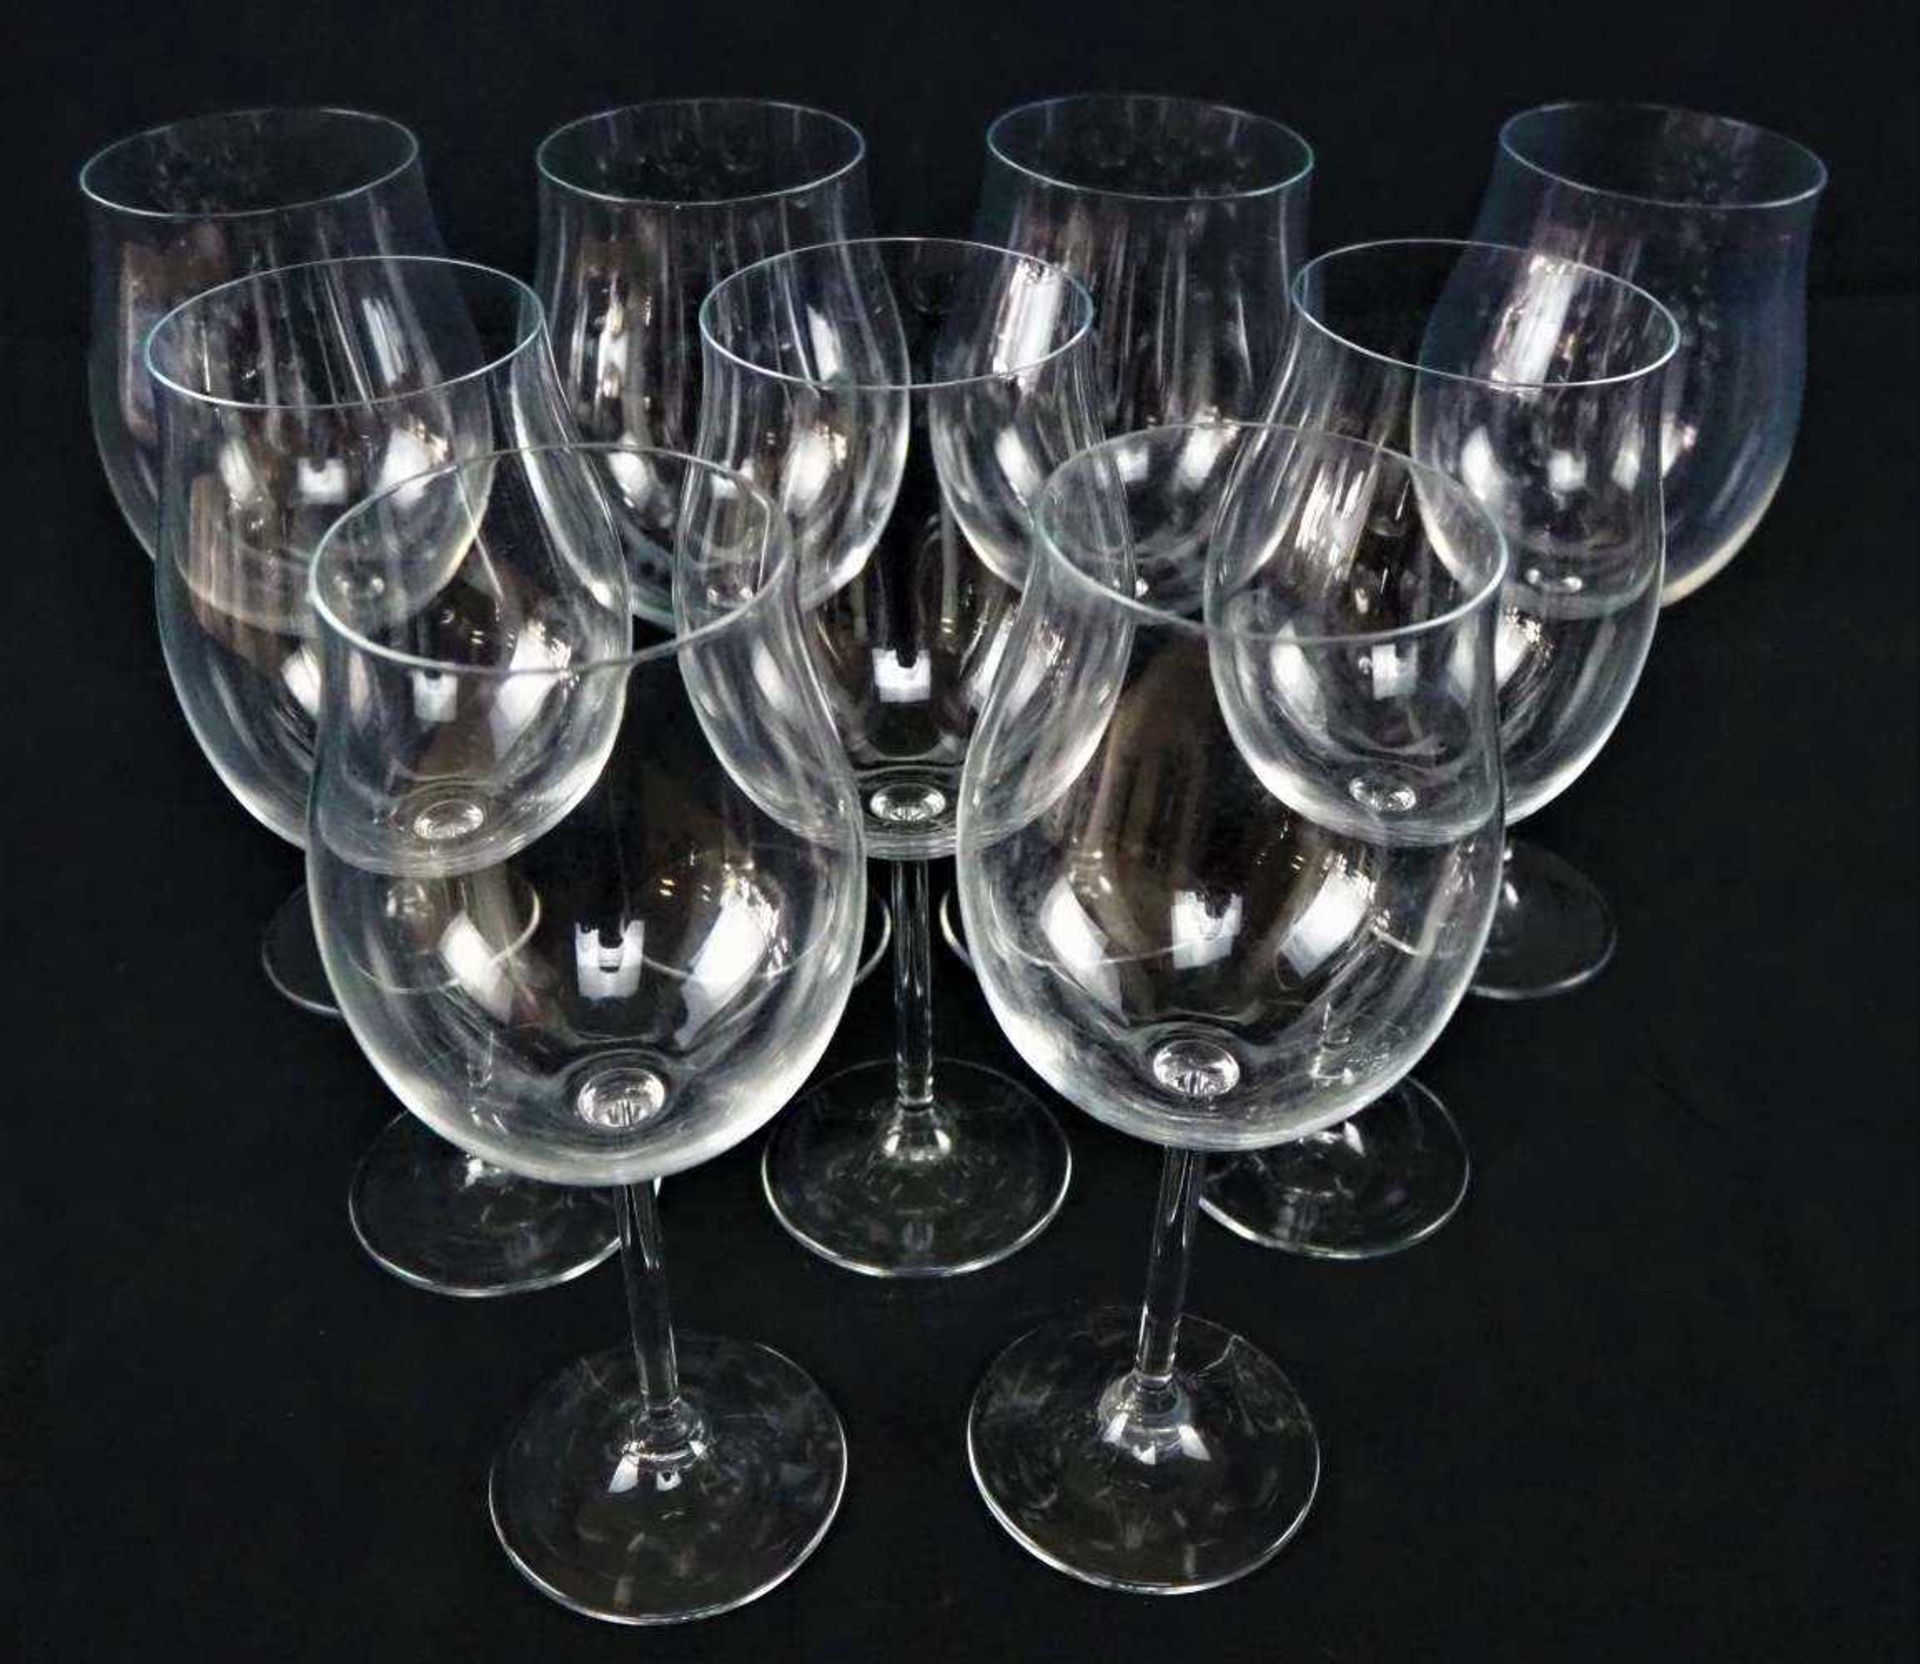 Satz klassischer Rotweingläser, 9Stück.Set of classic red wine glasses, 9 pieces- - -21.01 % buyer's